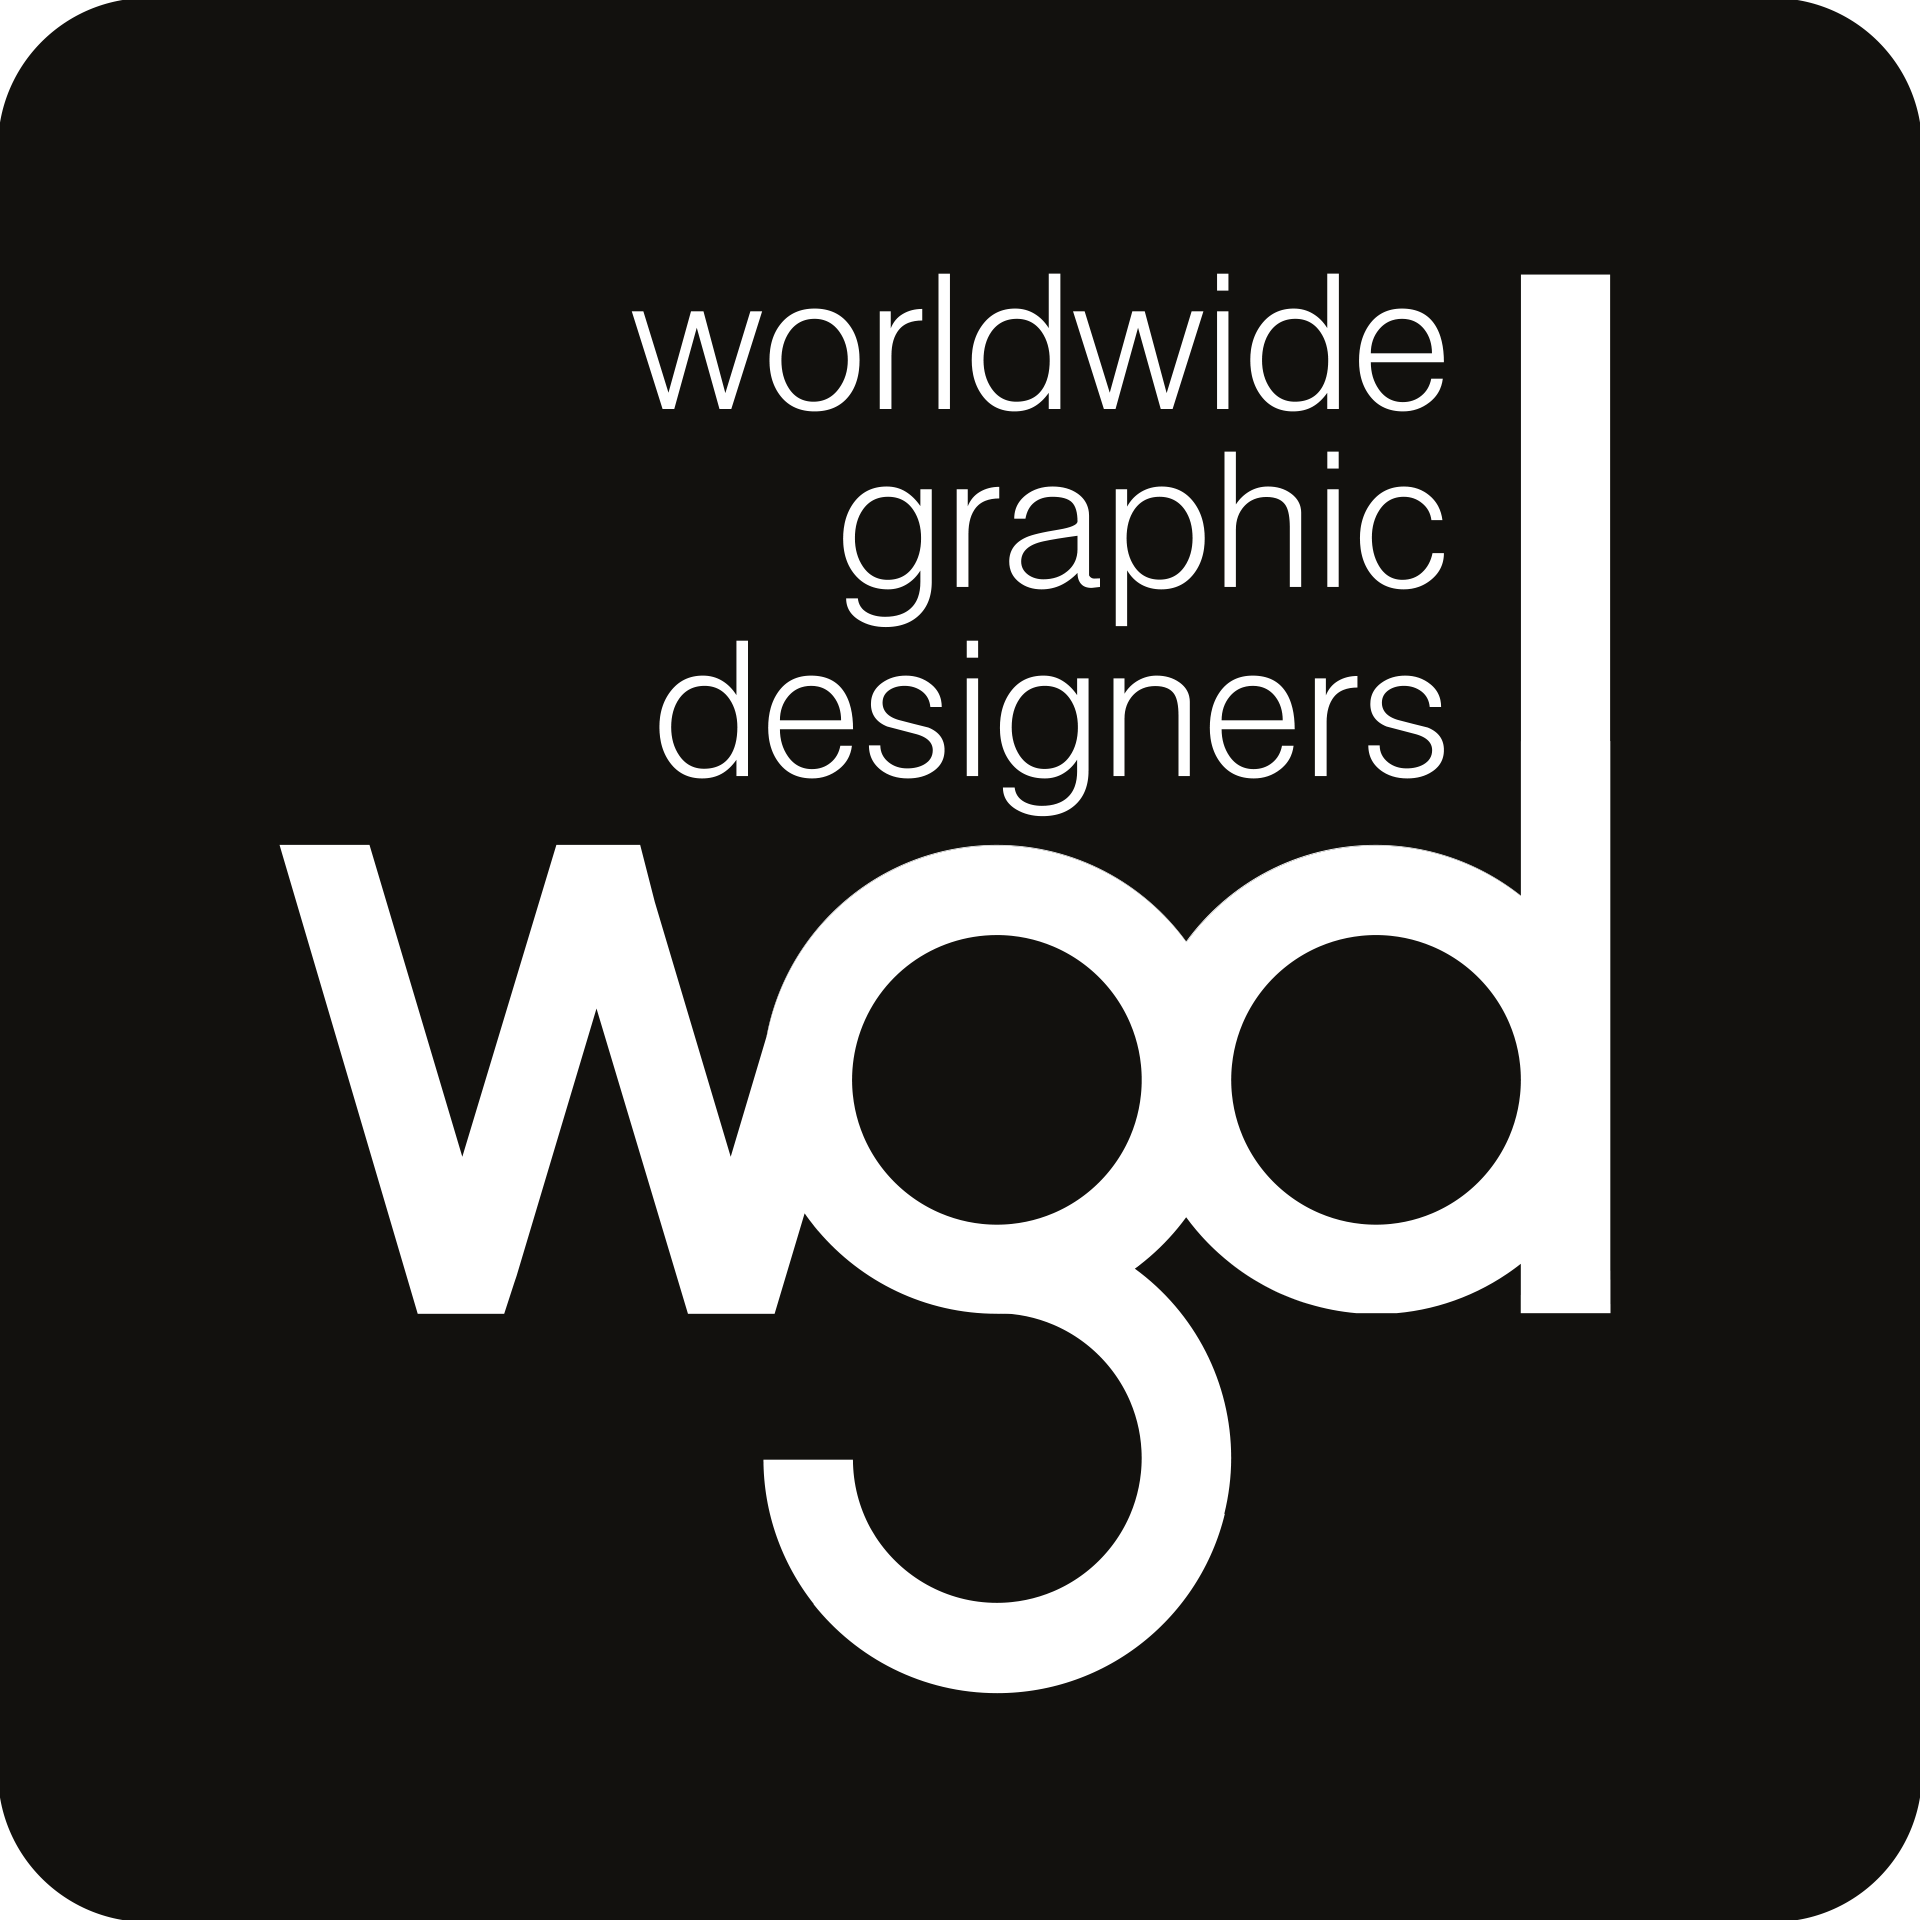 worldwidegraphicdesigners.com